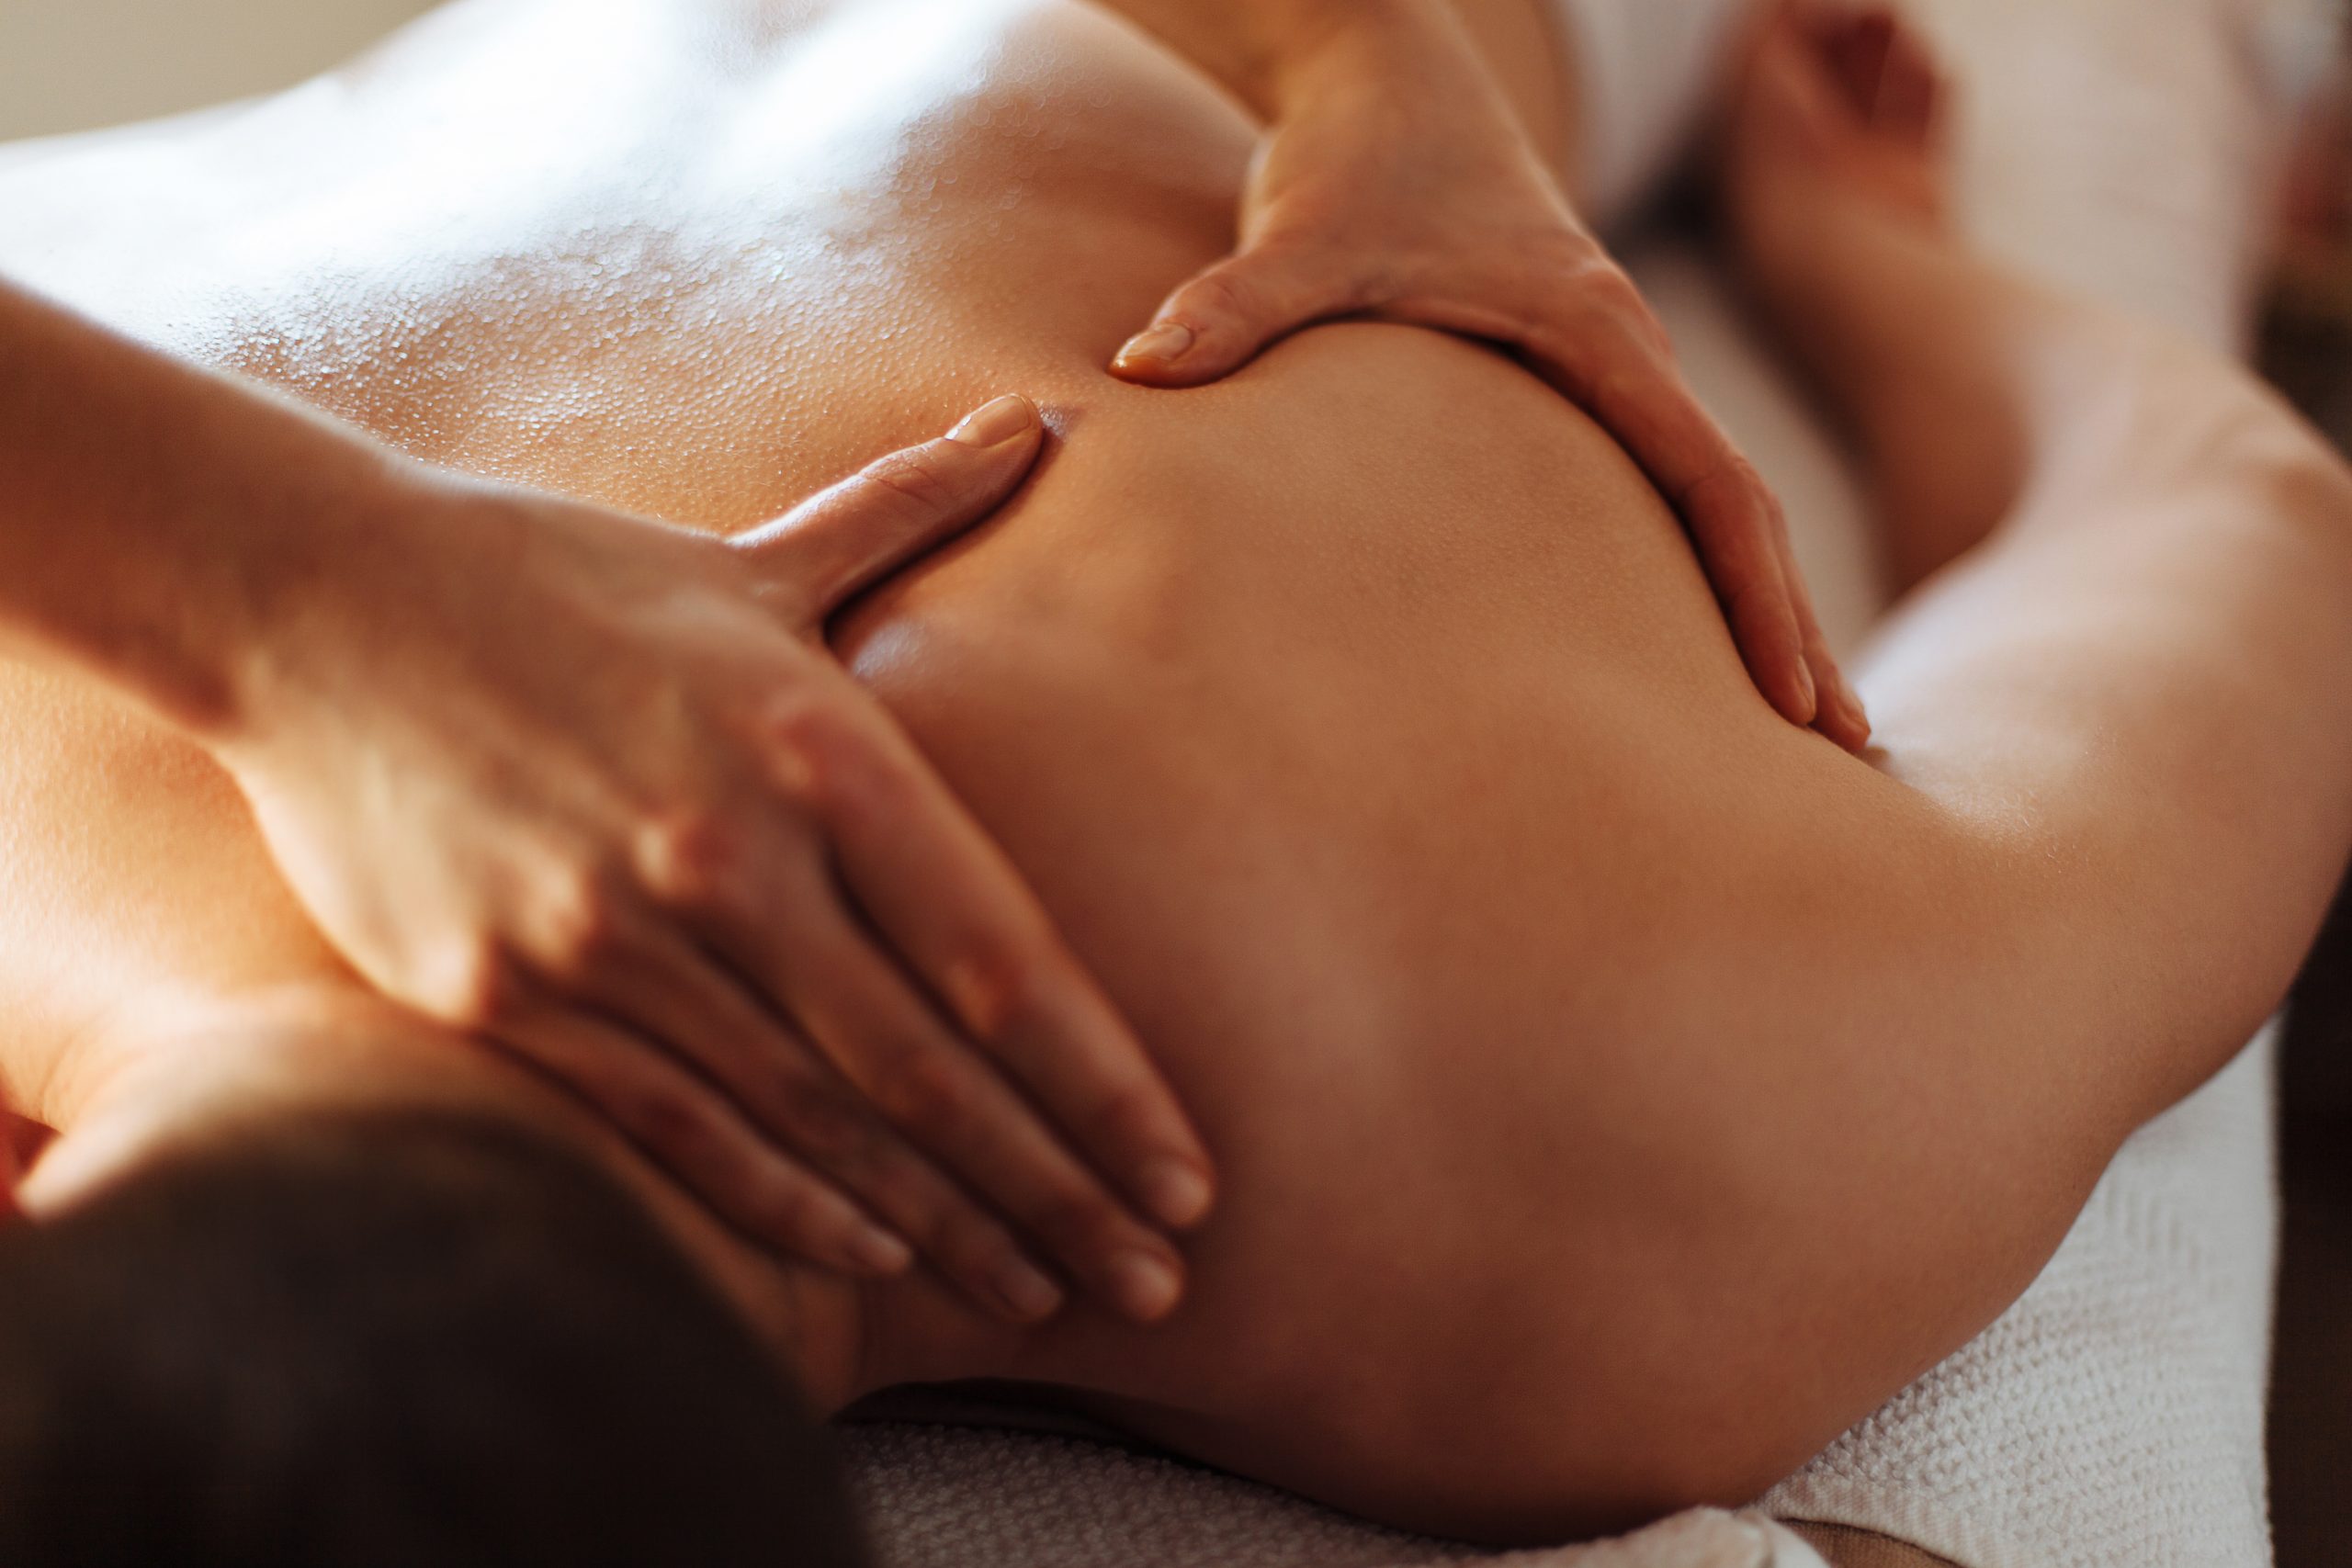 Massage: lequel choisir pour quels bienfaits? – L'Express